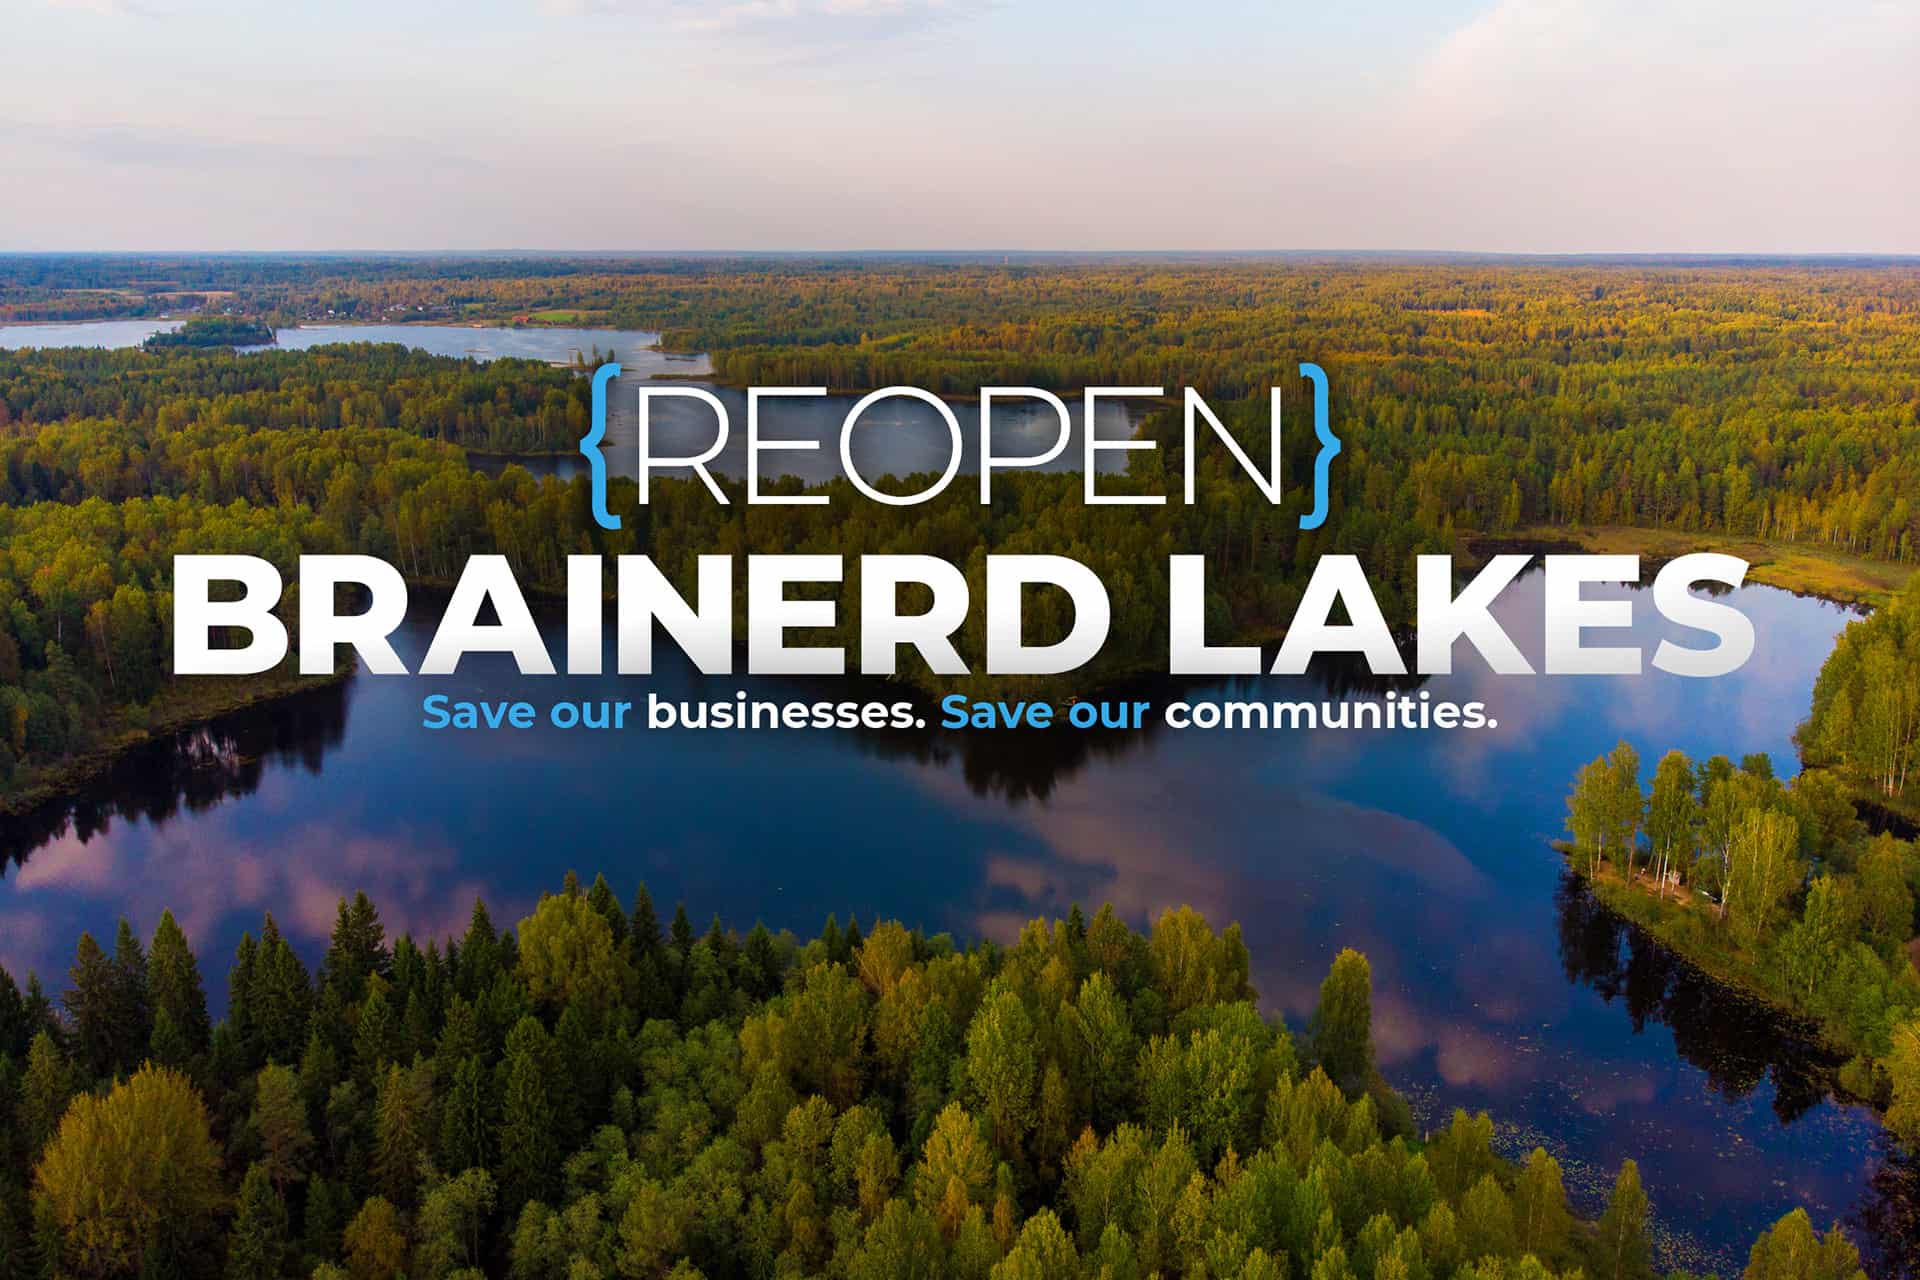 Reopen Brainerd Lakes